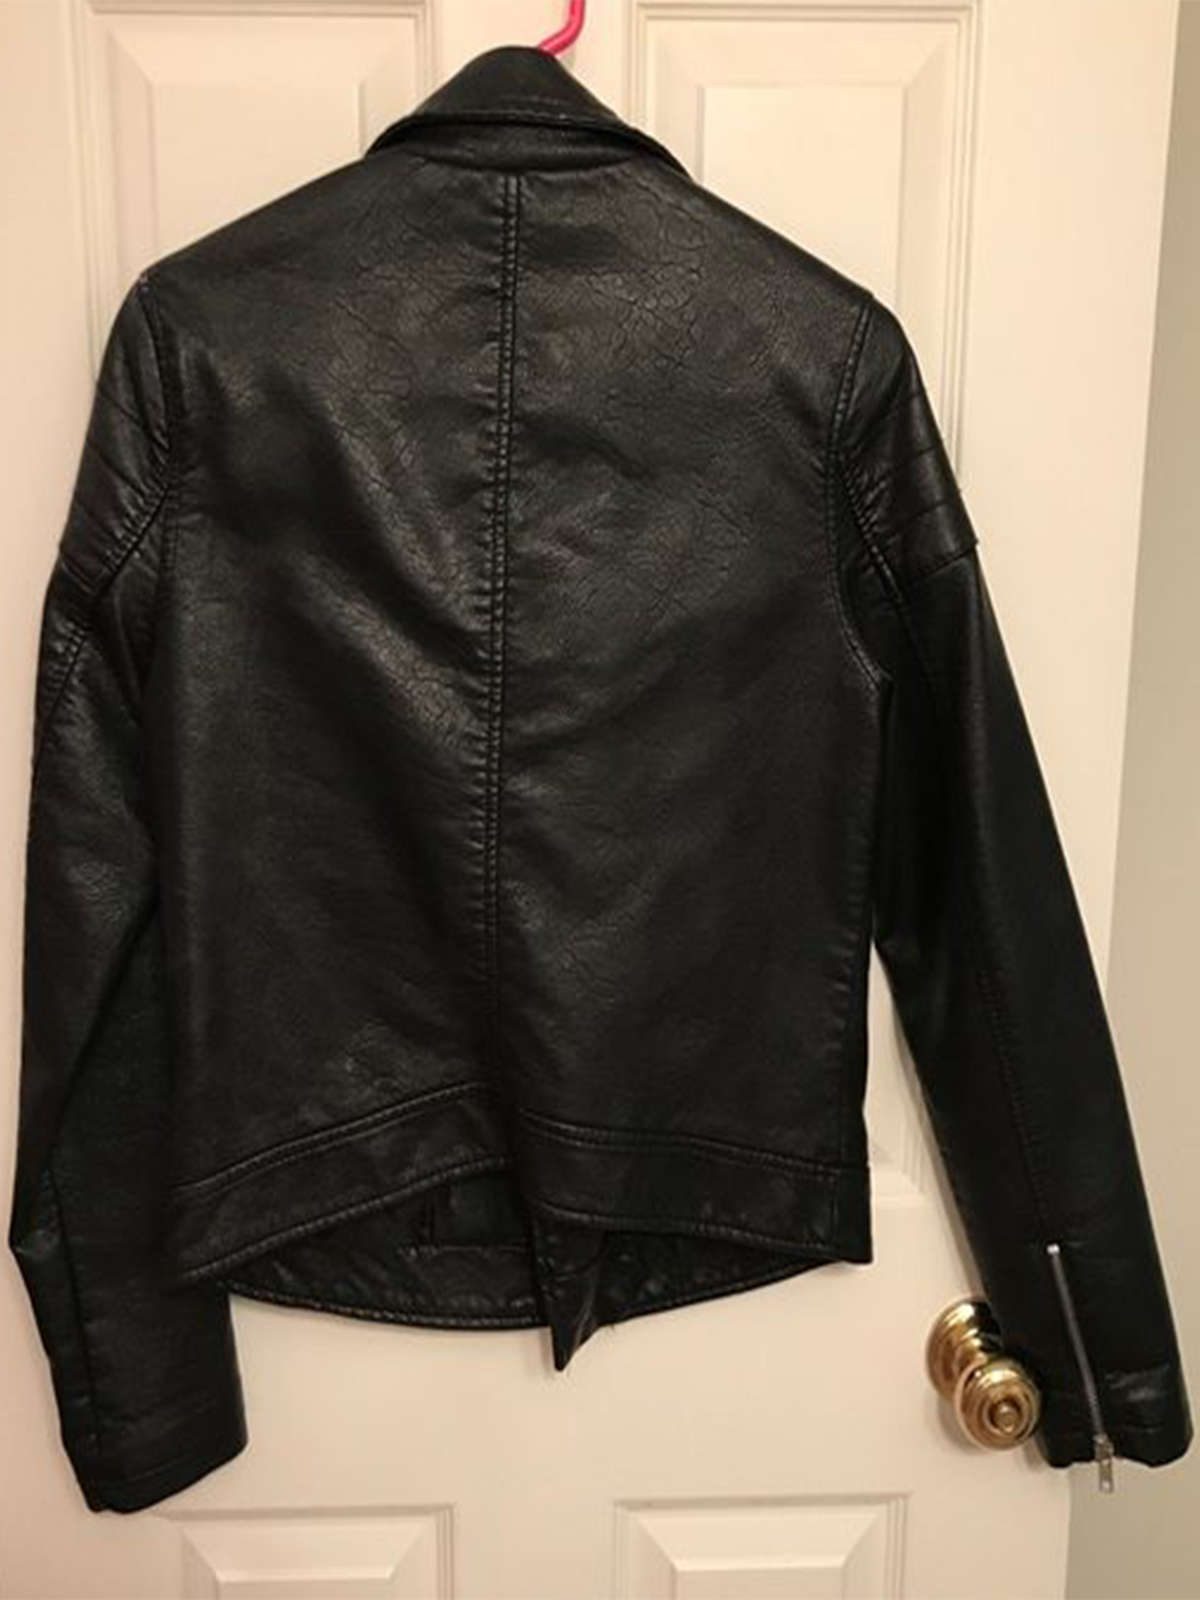 Forever 21 Black Leather Jacket